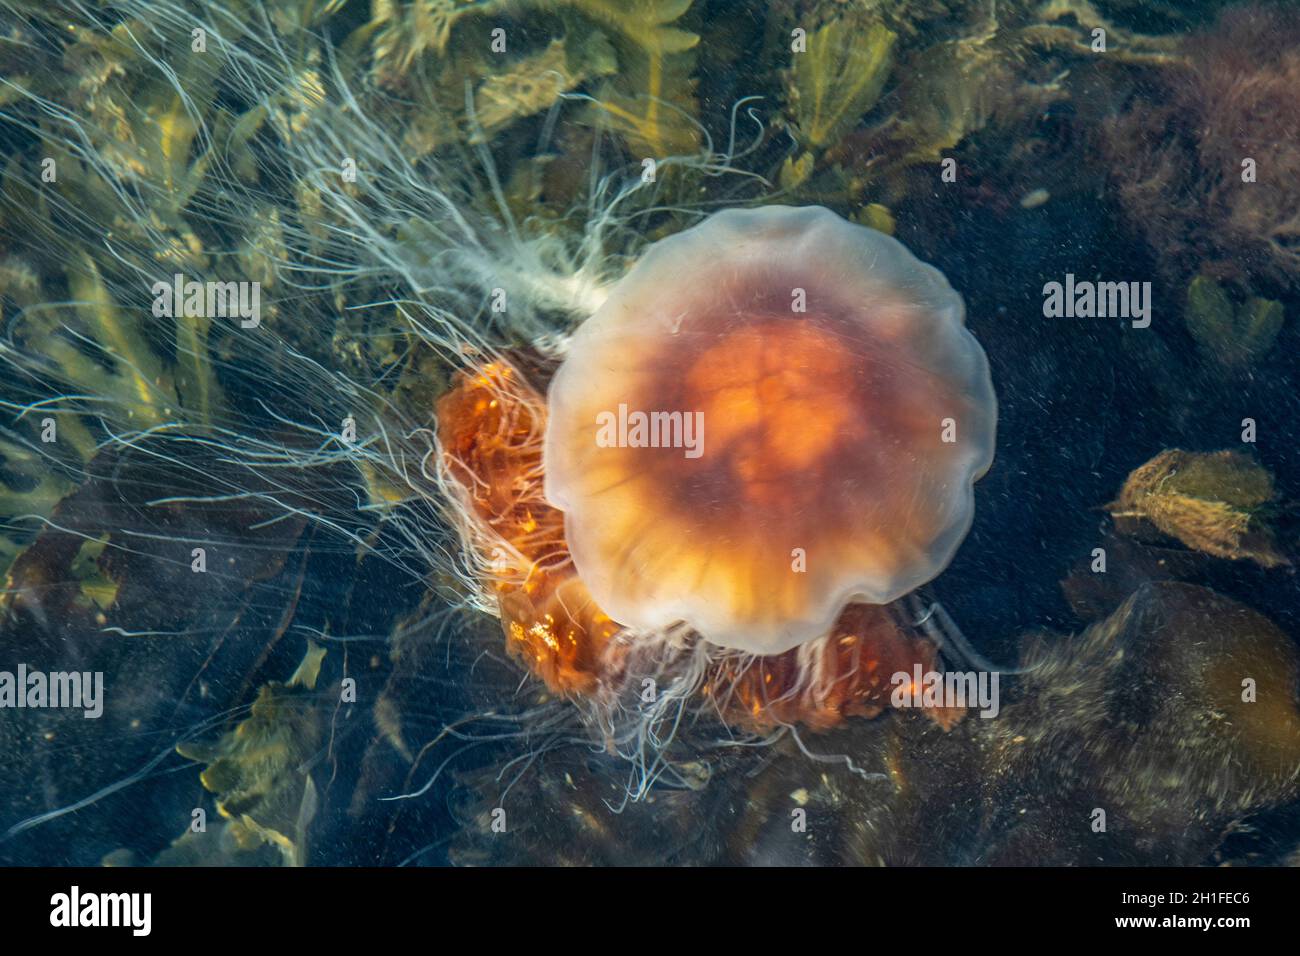 Un méduse de la manne du lion (Cyanea capillata), l'une des plus grandes espèces connues de méduses, nage dans le port de Kongebro Havn.Middelfart, Funen, Danemark, Banque D'Images